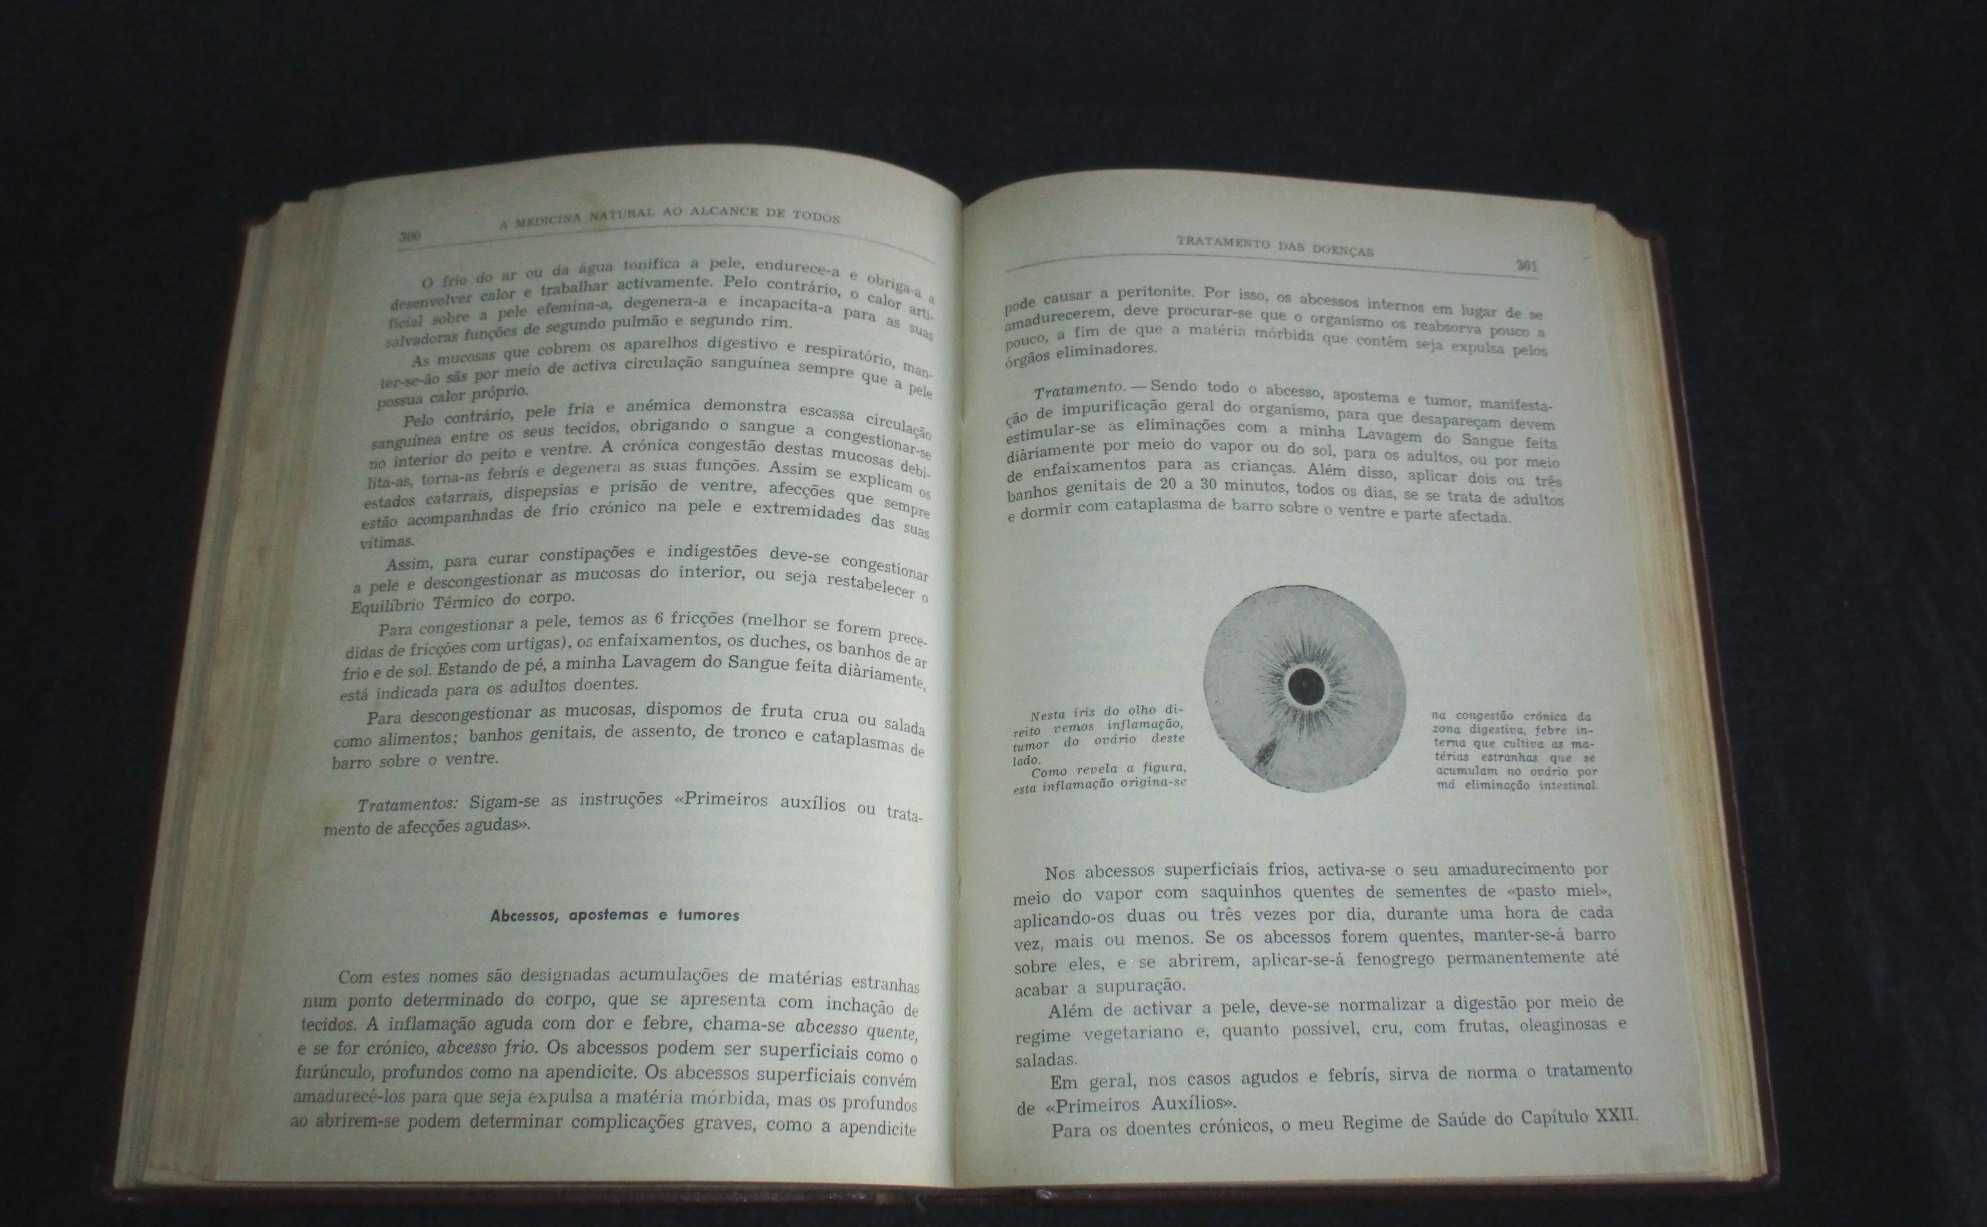 Livro A Medicina Natural ao Alcance de Todos 1958